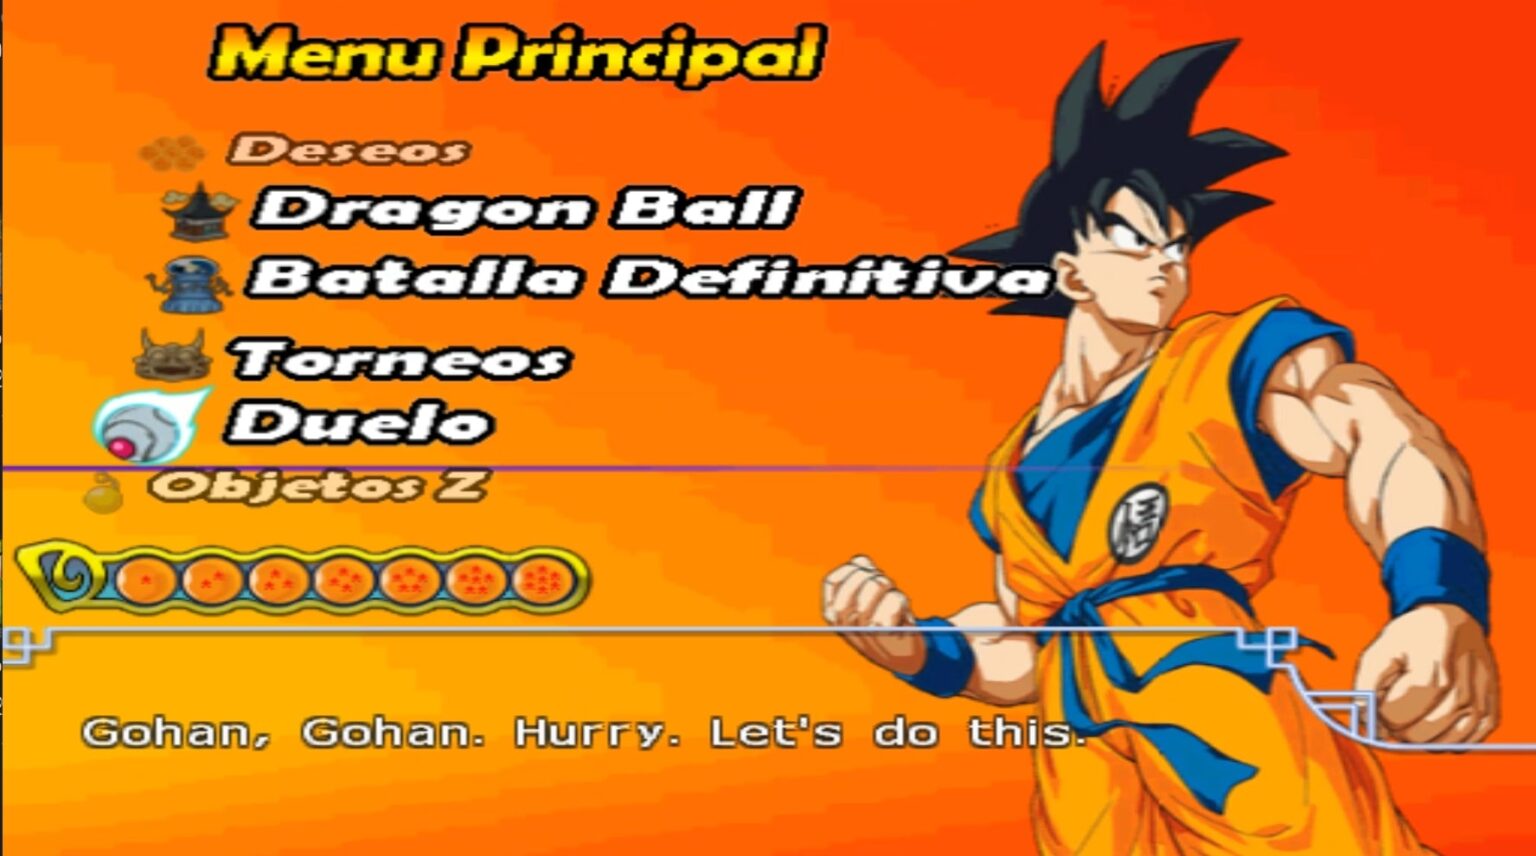 Dragon Ball Z Budokai Tenkachi 4 Versão Brasileira- Ps2 | Jogo de  Computador Nunca Usado 51325764 | enjoei